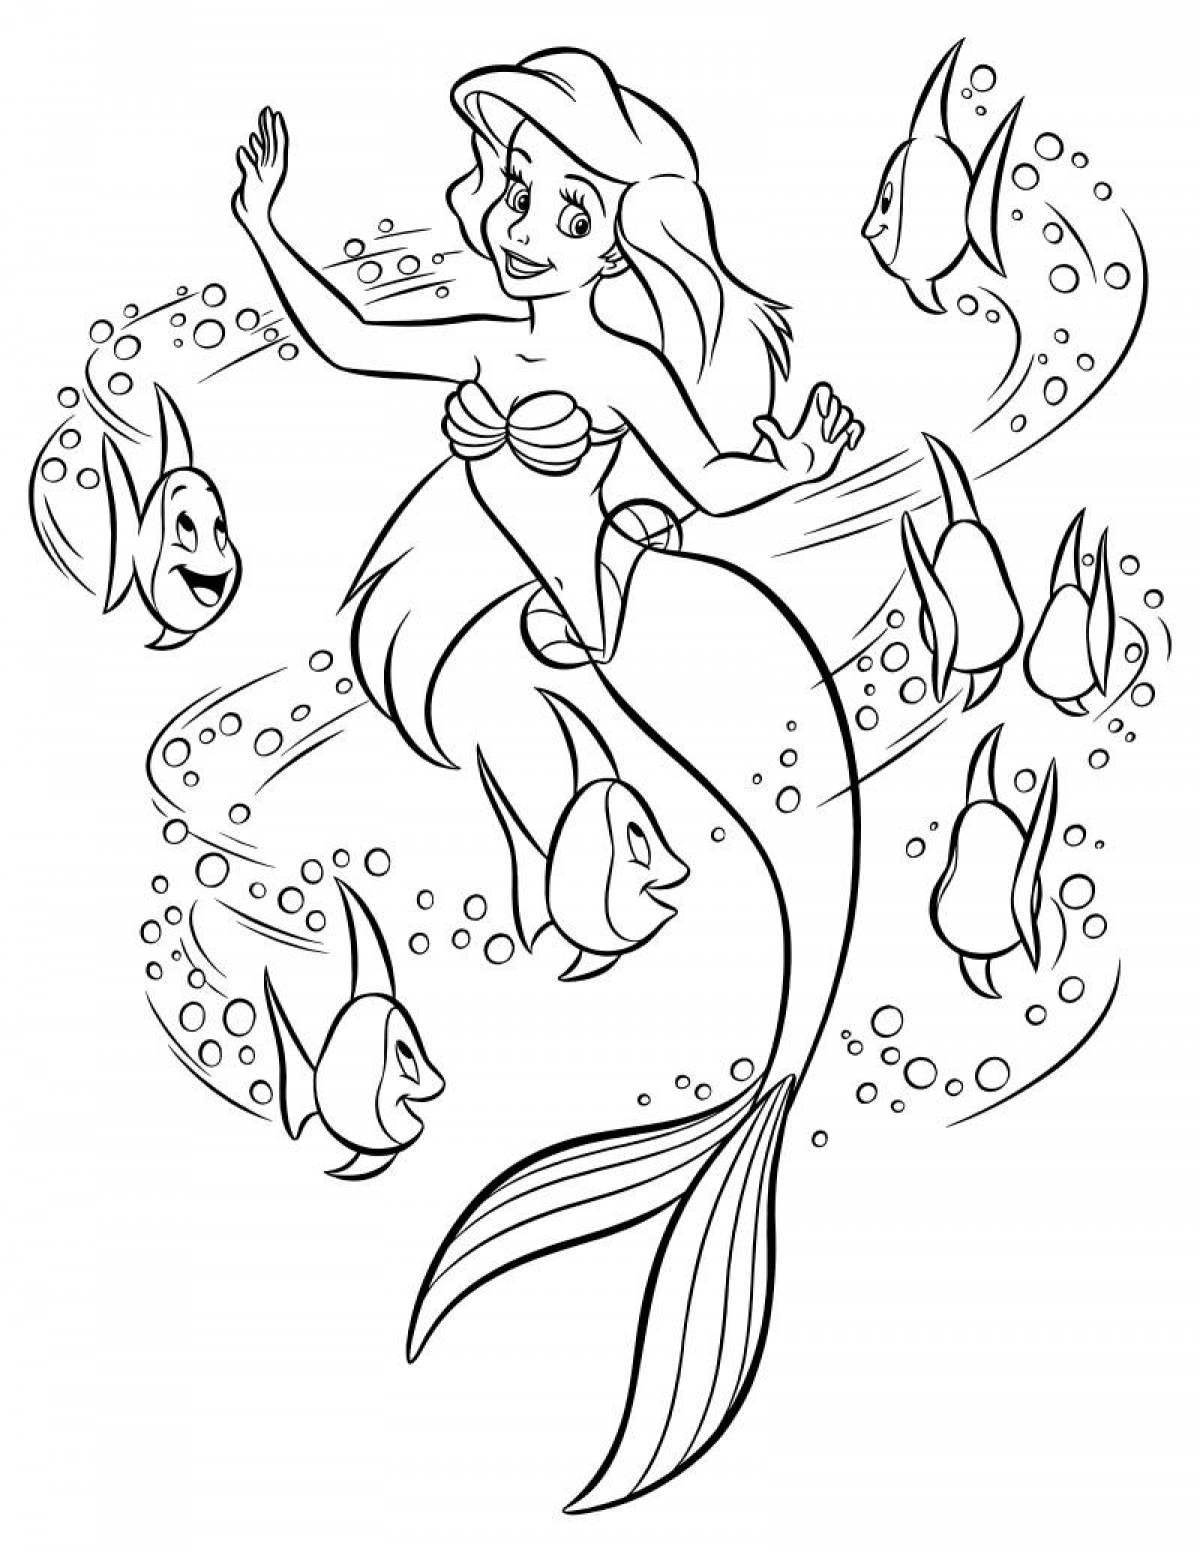 Royal mermaid coloring page